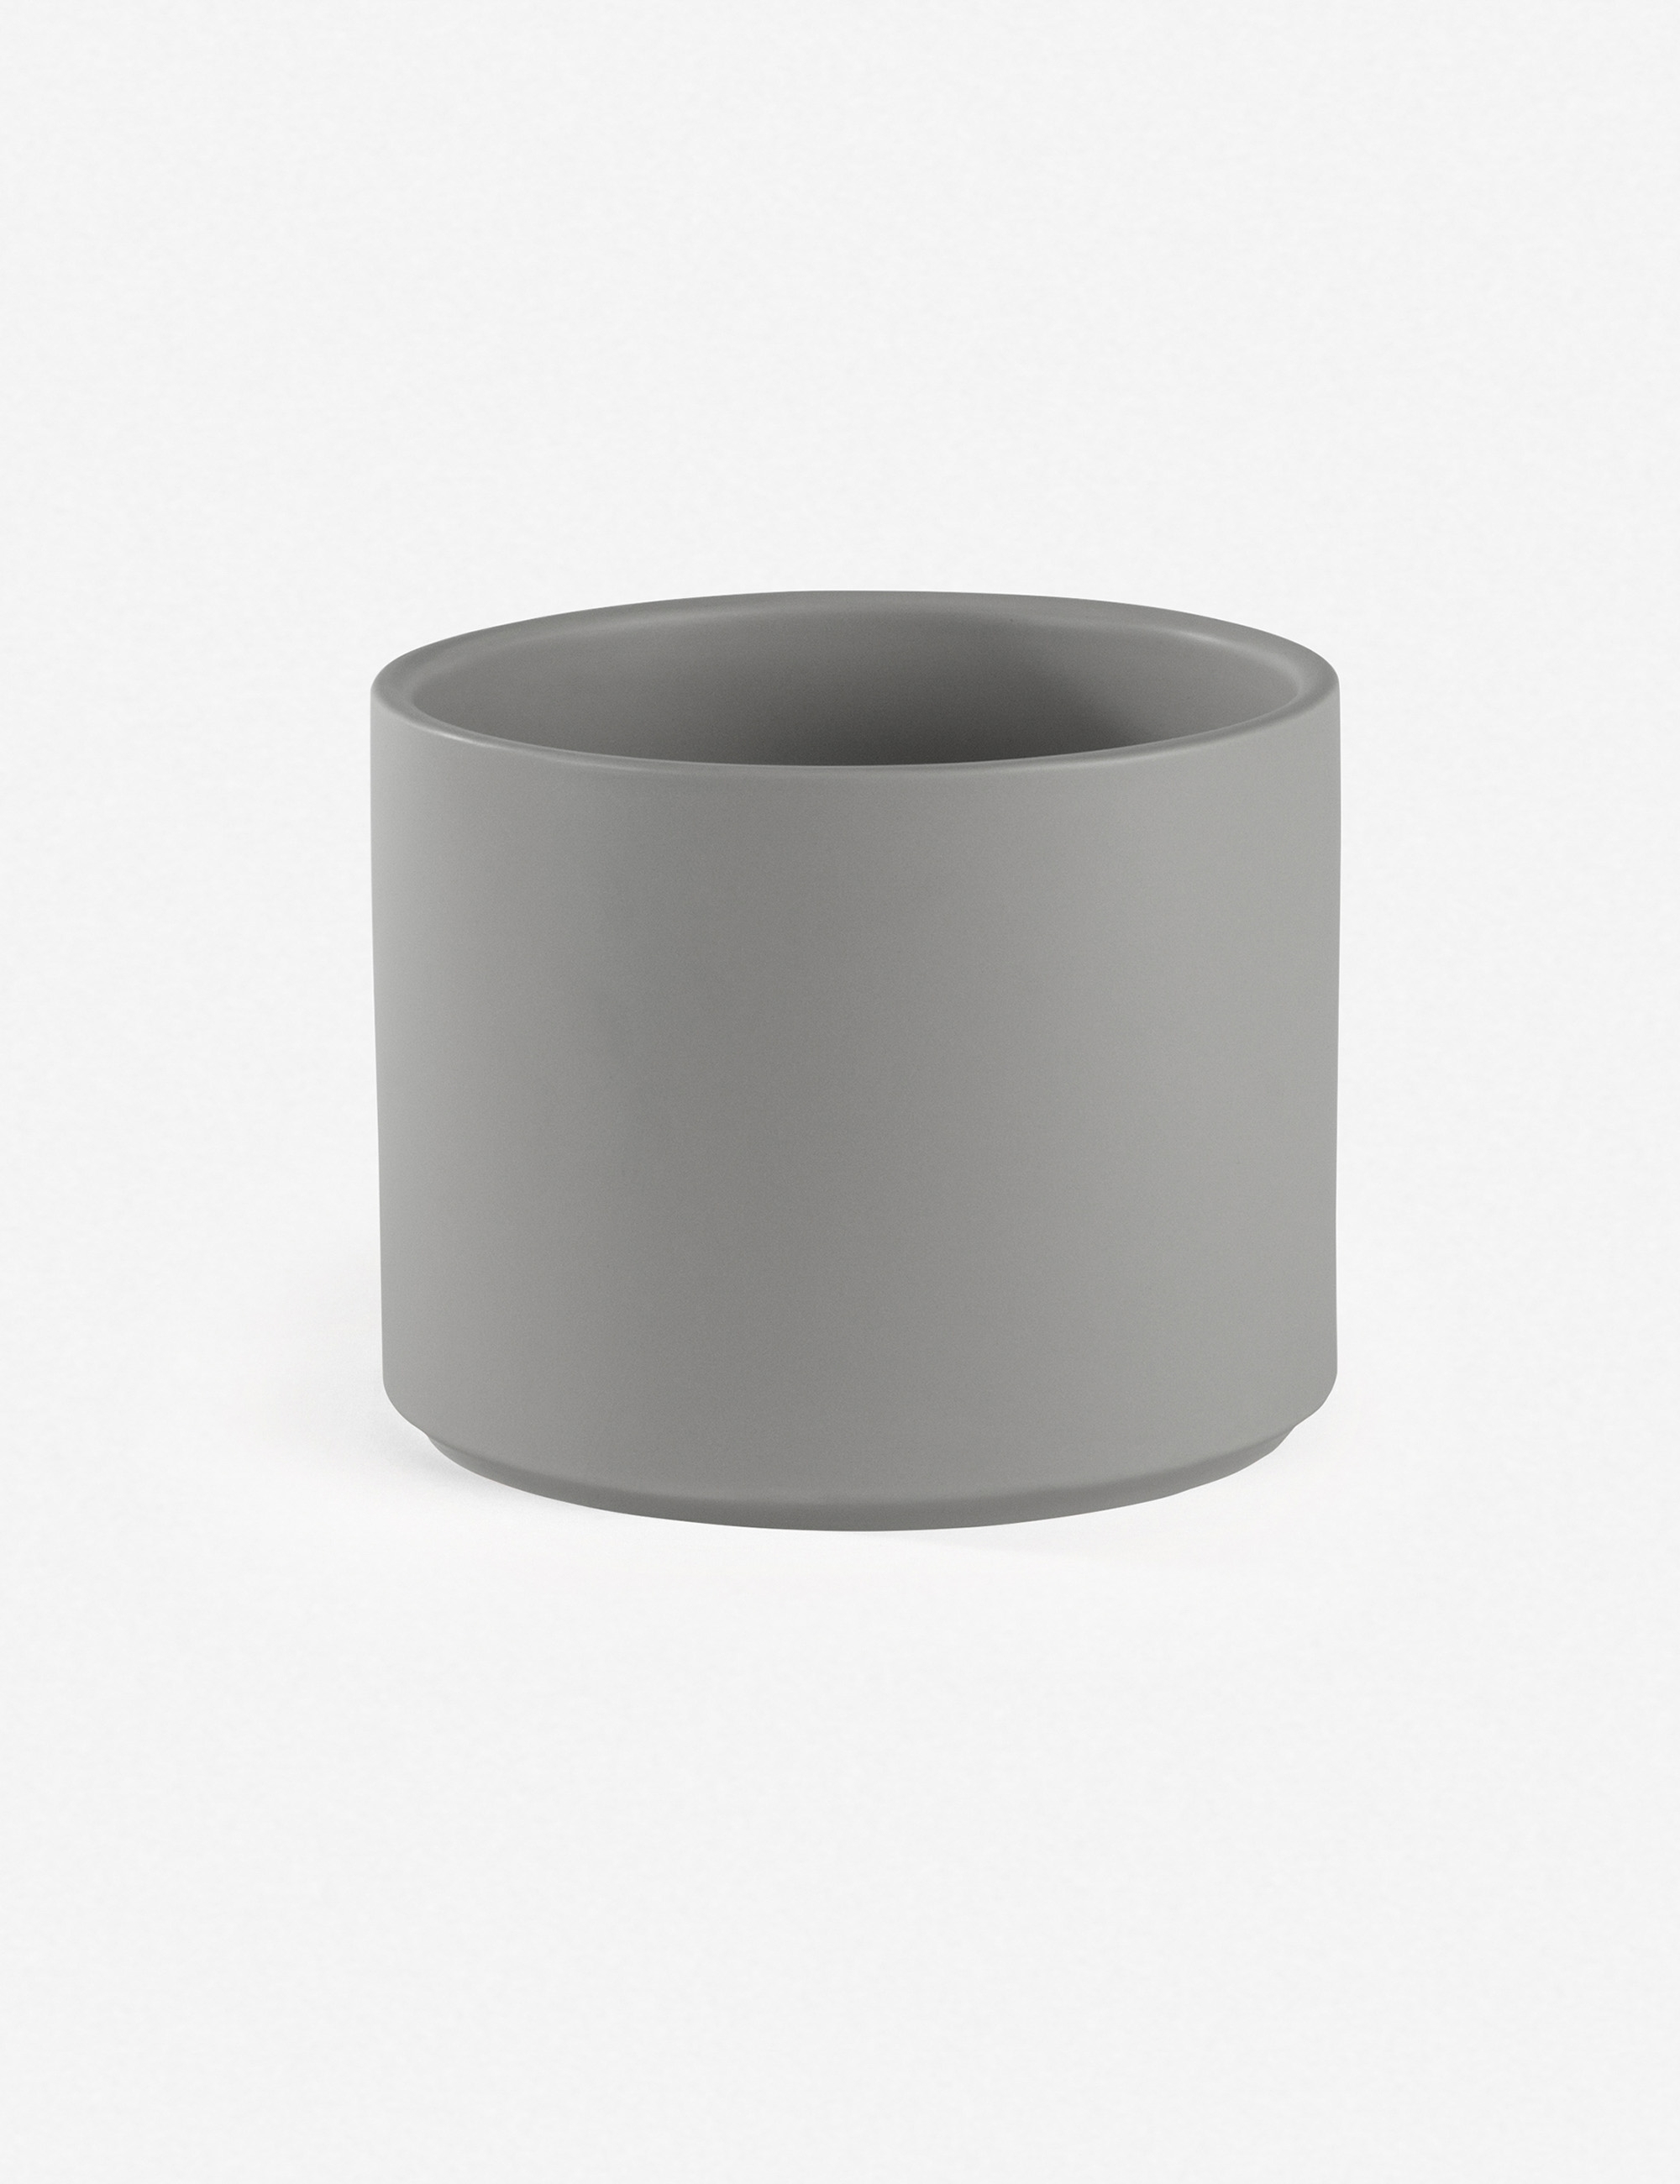 LBE Design Ceramic Planter, Gray 10"Dia x 9"H - Image 2